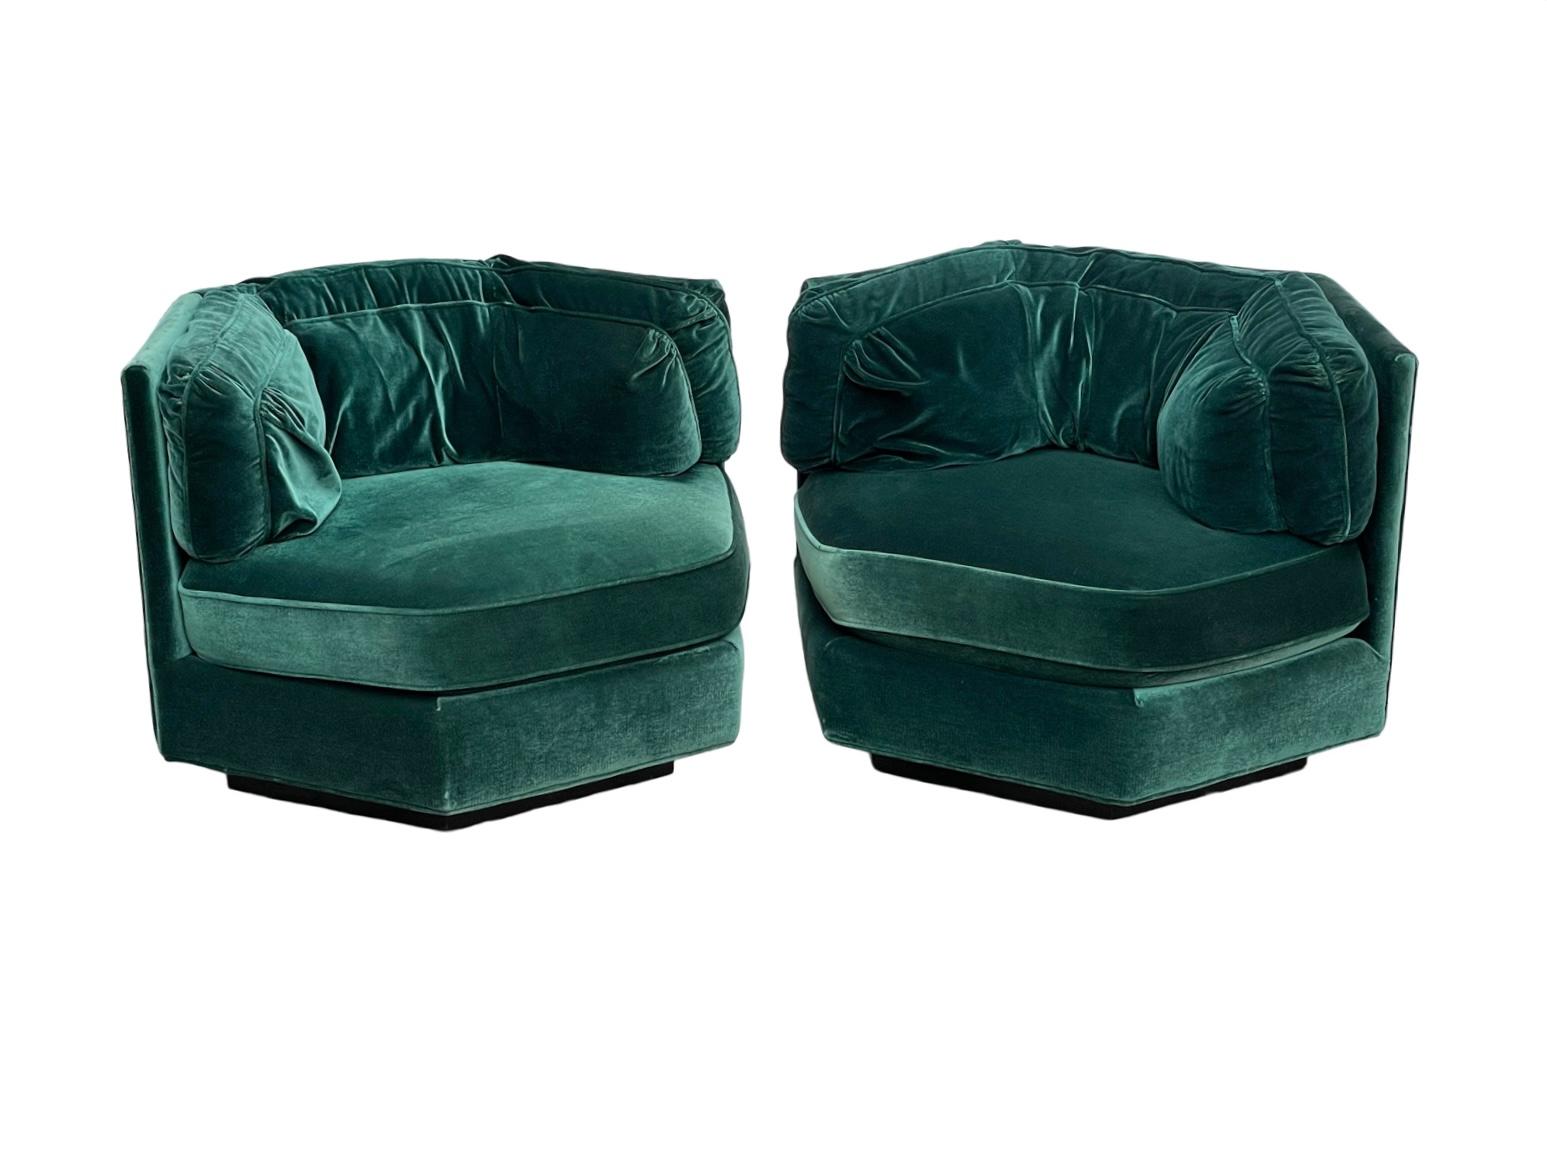 American 1970s Hexagonal Green Velvet Sofa Club Chair W/ Plinth Base-A Pair For Sale